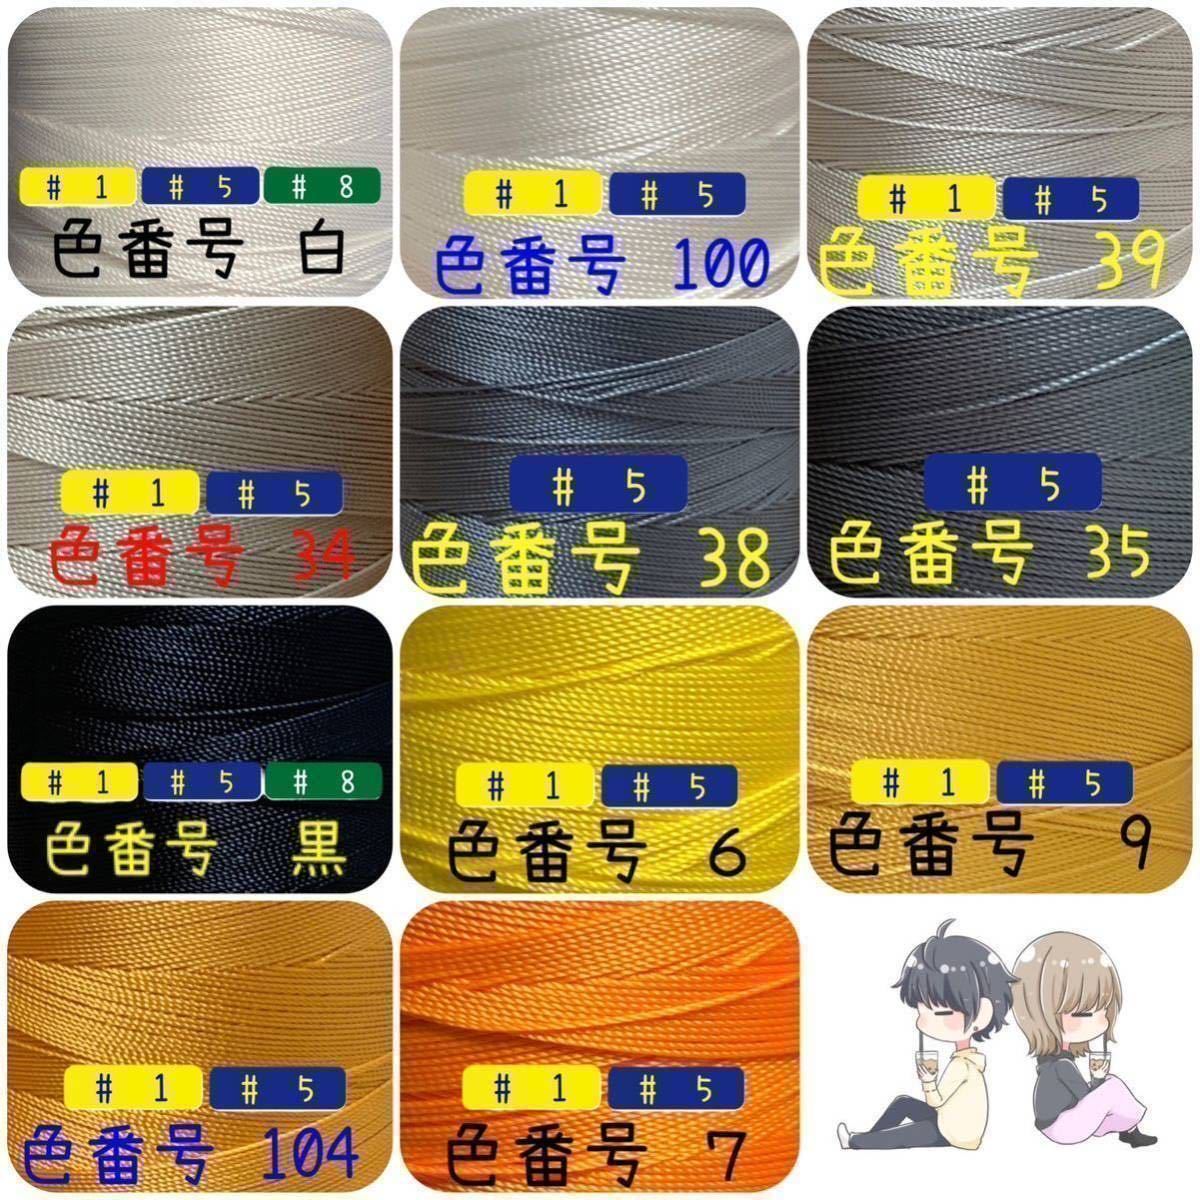 【3点普通郵便】ビニモMBT #1 #5 #8 レザークラフト手縫い糸_画像2